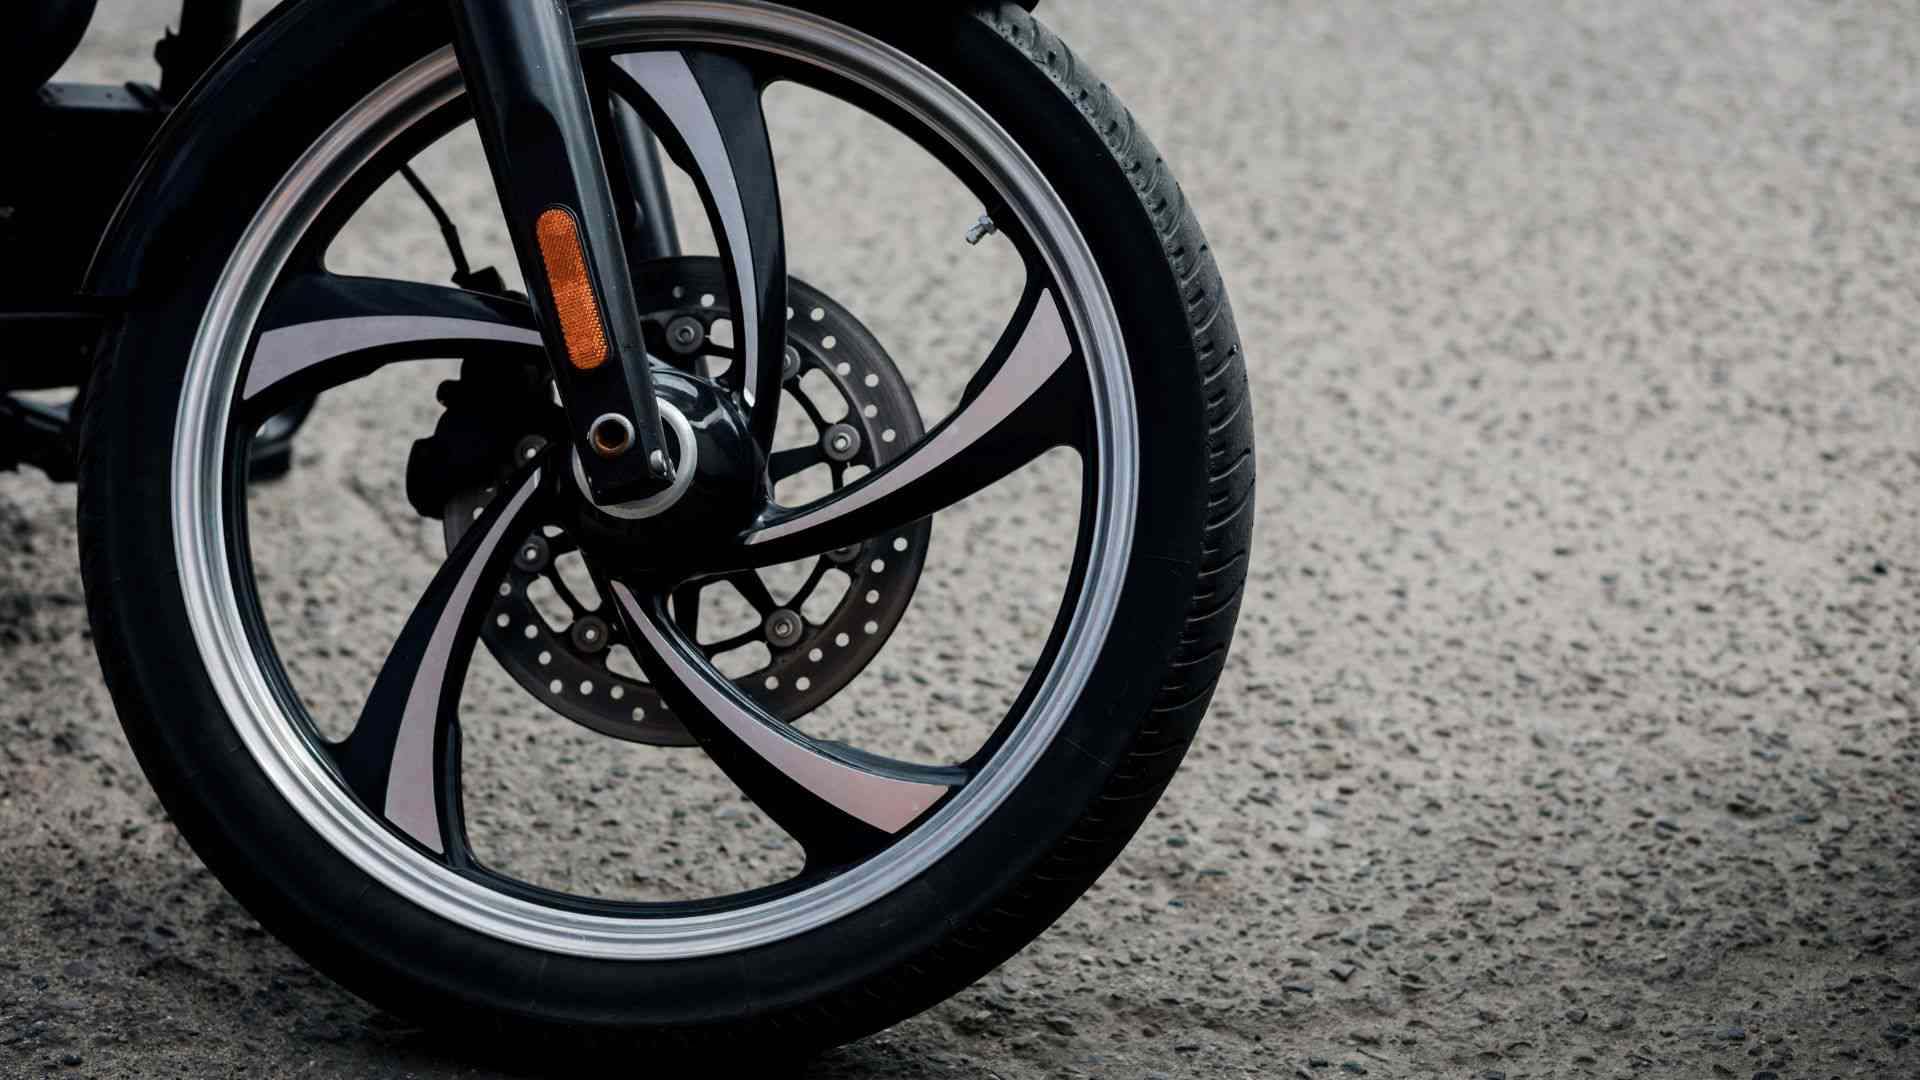 Bild på en motorcykels däck och fälg